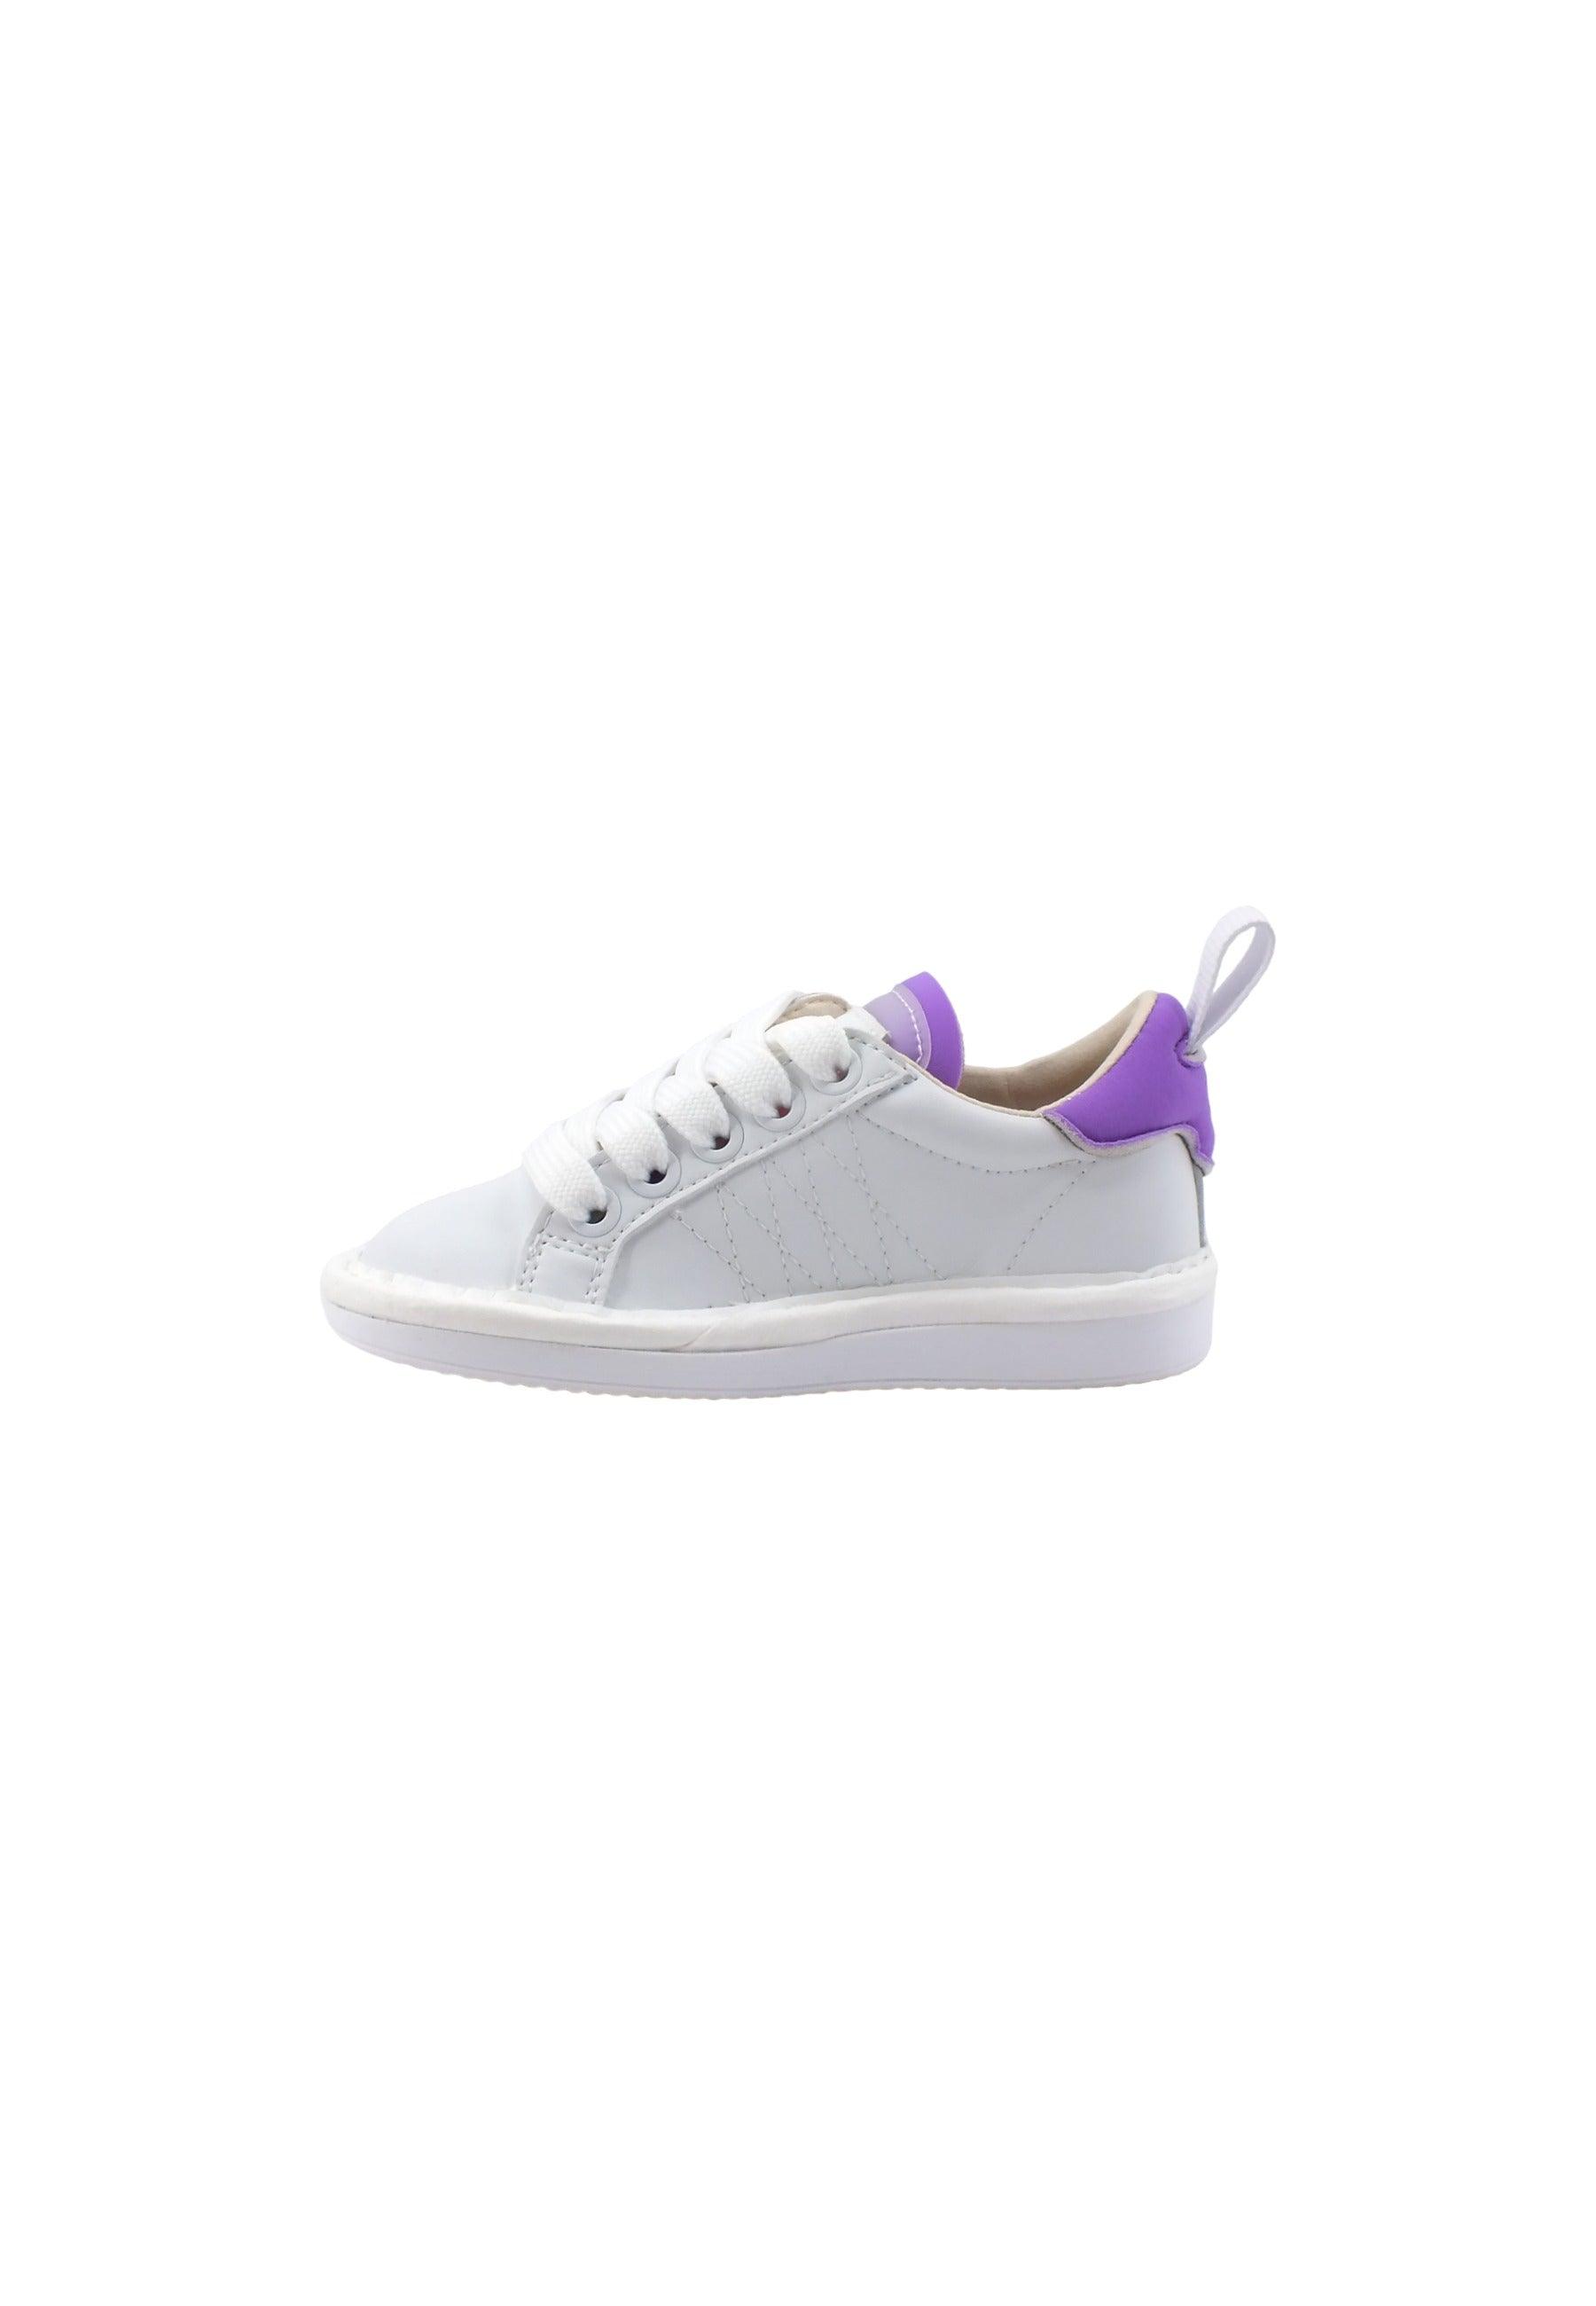 PAN CHIC Sneaker Bambino White Violet P01B00300260016 - Sandrini Calzature e Abbigliamento